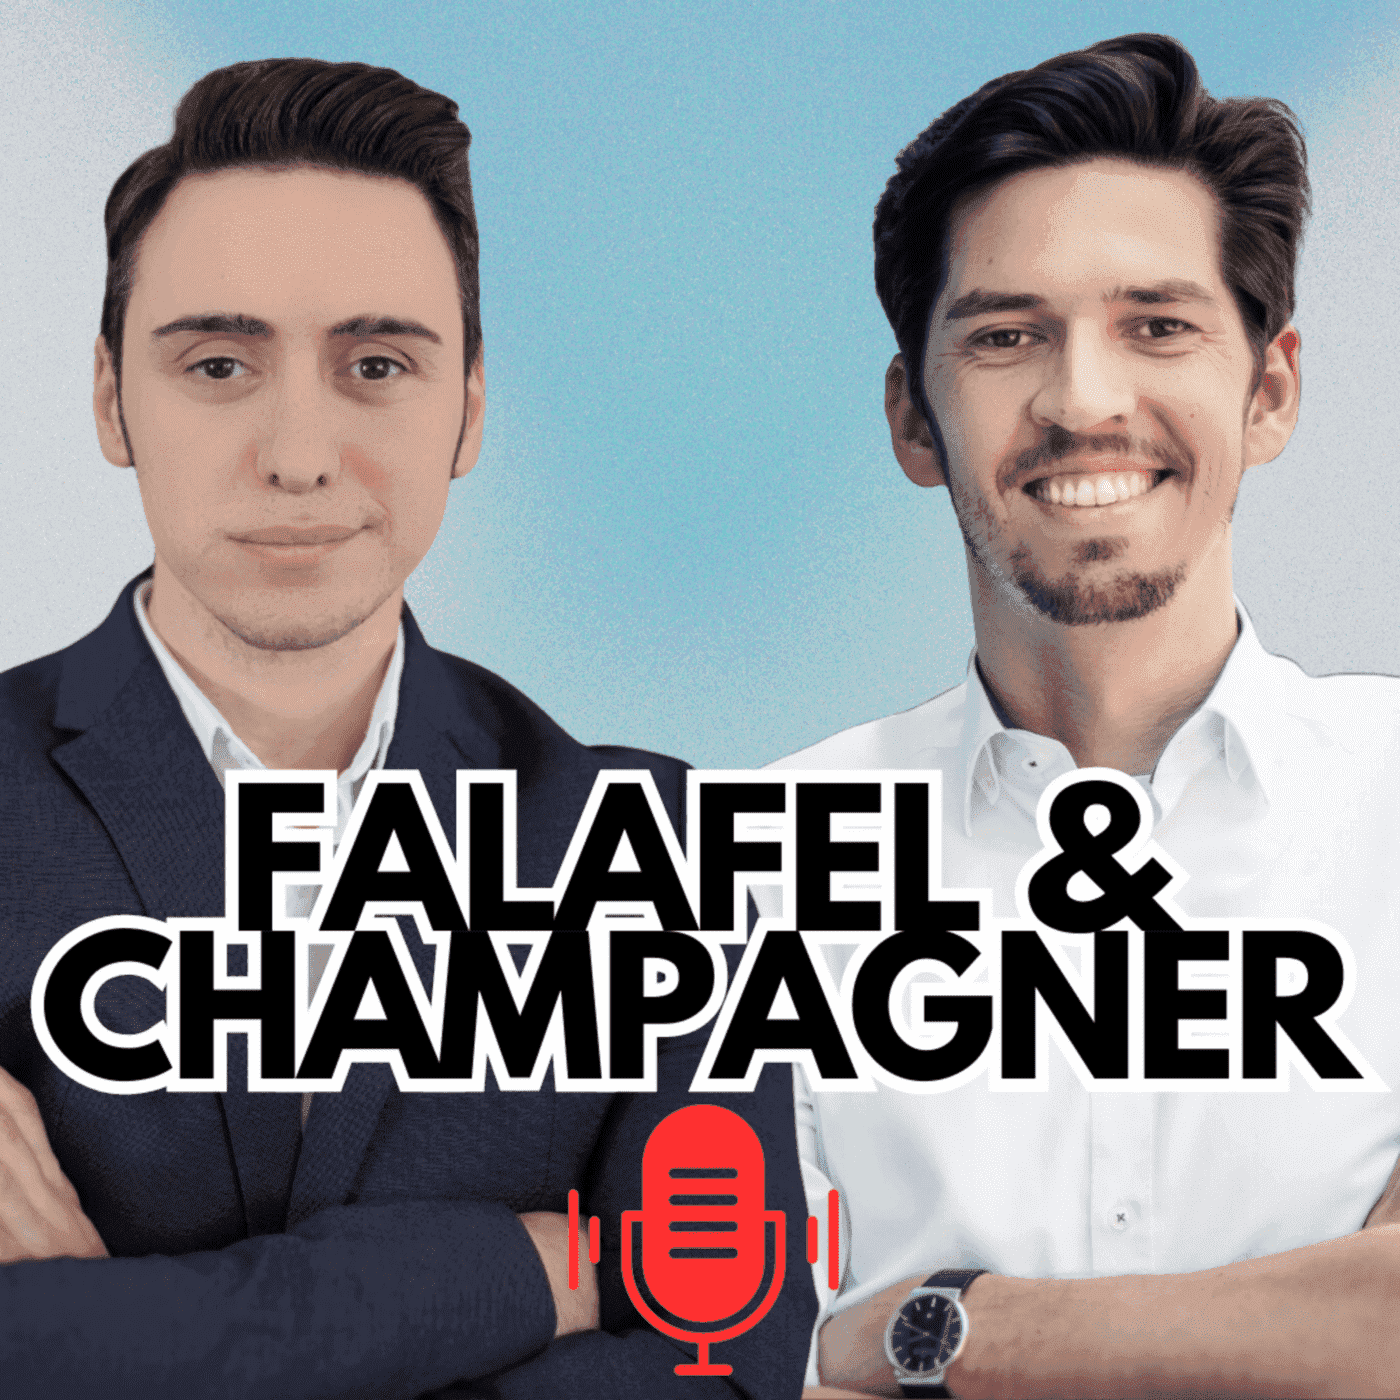 Falafel und Champagner - Das wird man ja wohl noch erklären dürfen!